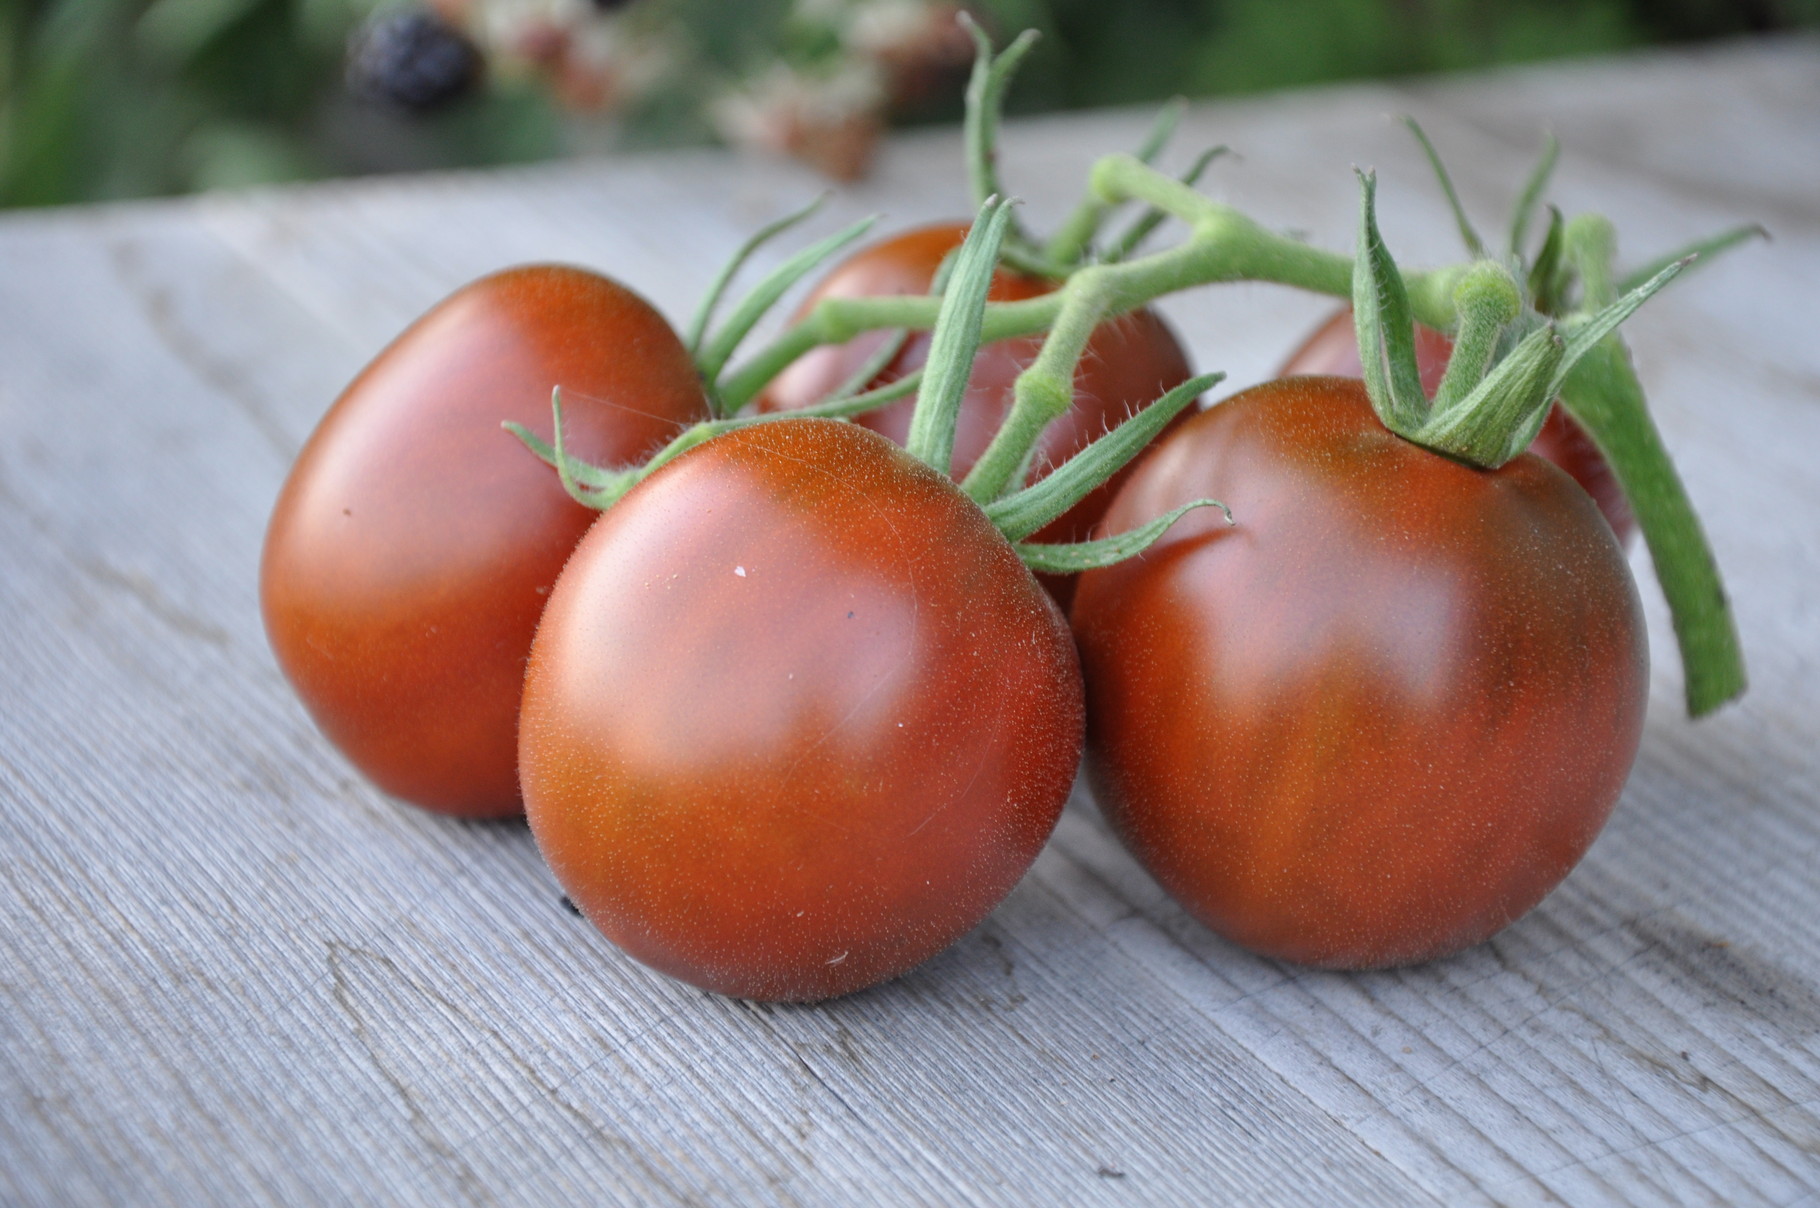 TOM 016 PSR Black Plum / Pflaumenförmige Tomate, 2- bis 3-kammerig, von dunkelbrauner Farbe mit dunkelrotem Stich. Dunkles Fruchtfleisch, köstlicher Geschmack, leicht süss. Massenträger (12 bis 15 Früchte à 50 g pro Stand).